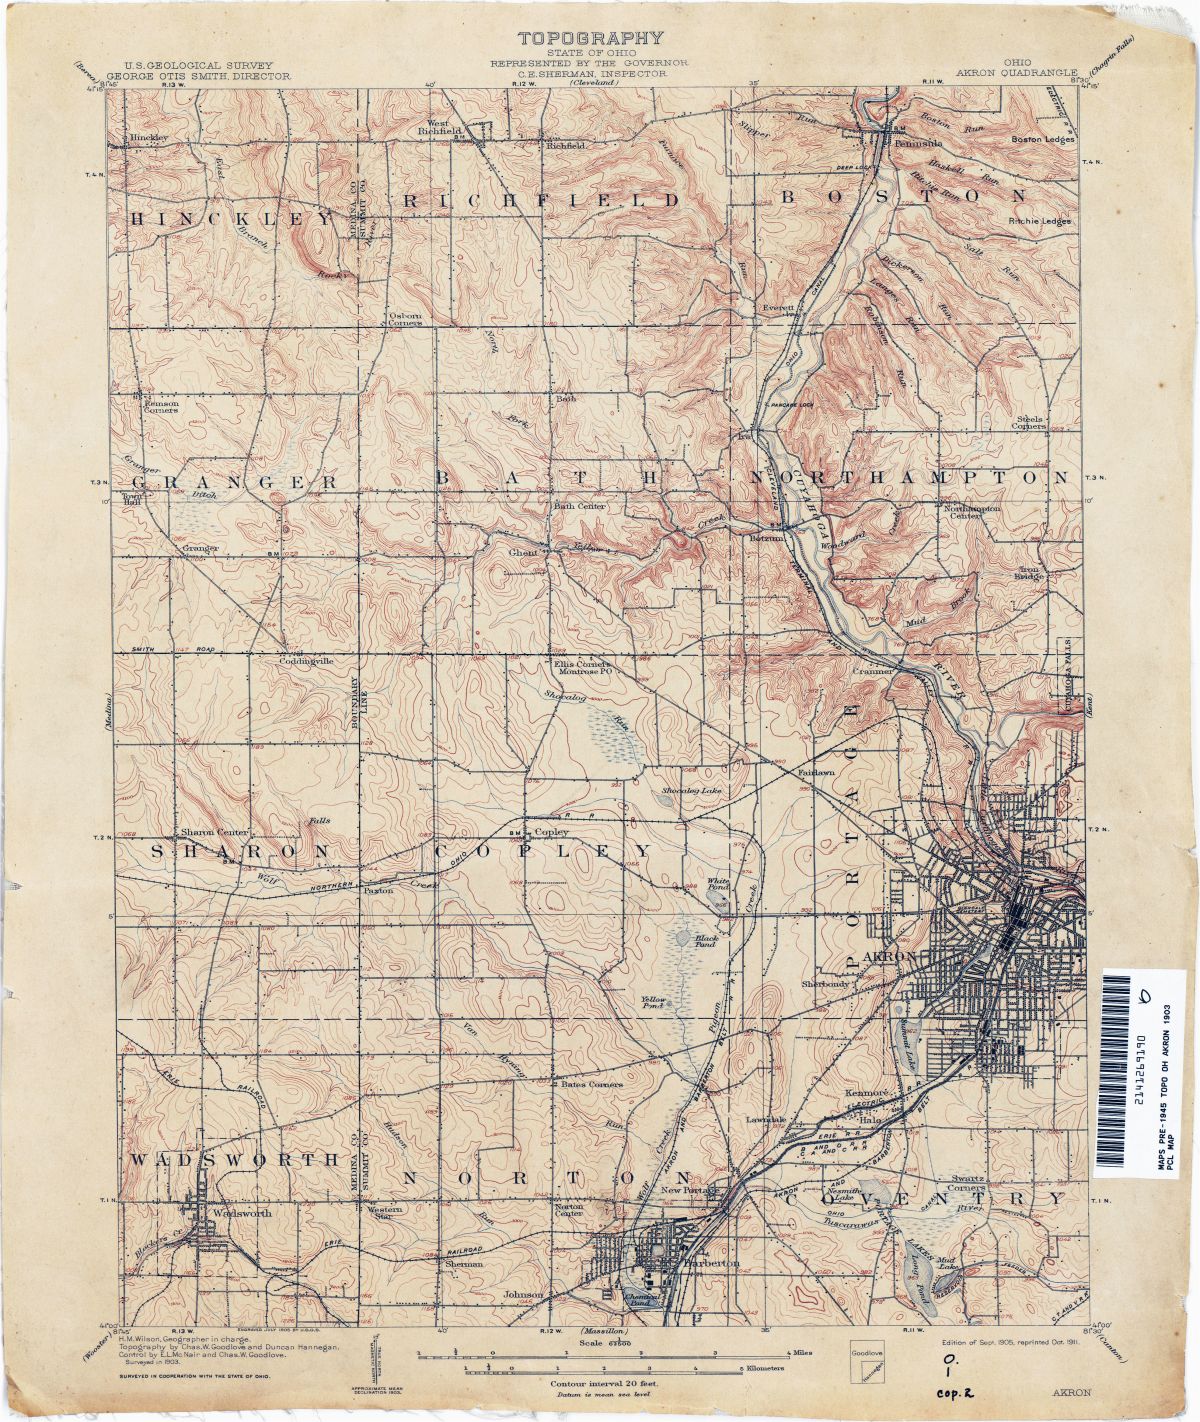 chillicothe-ohio-zip-code-map-ohio-historical-topographic-maps-perry